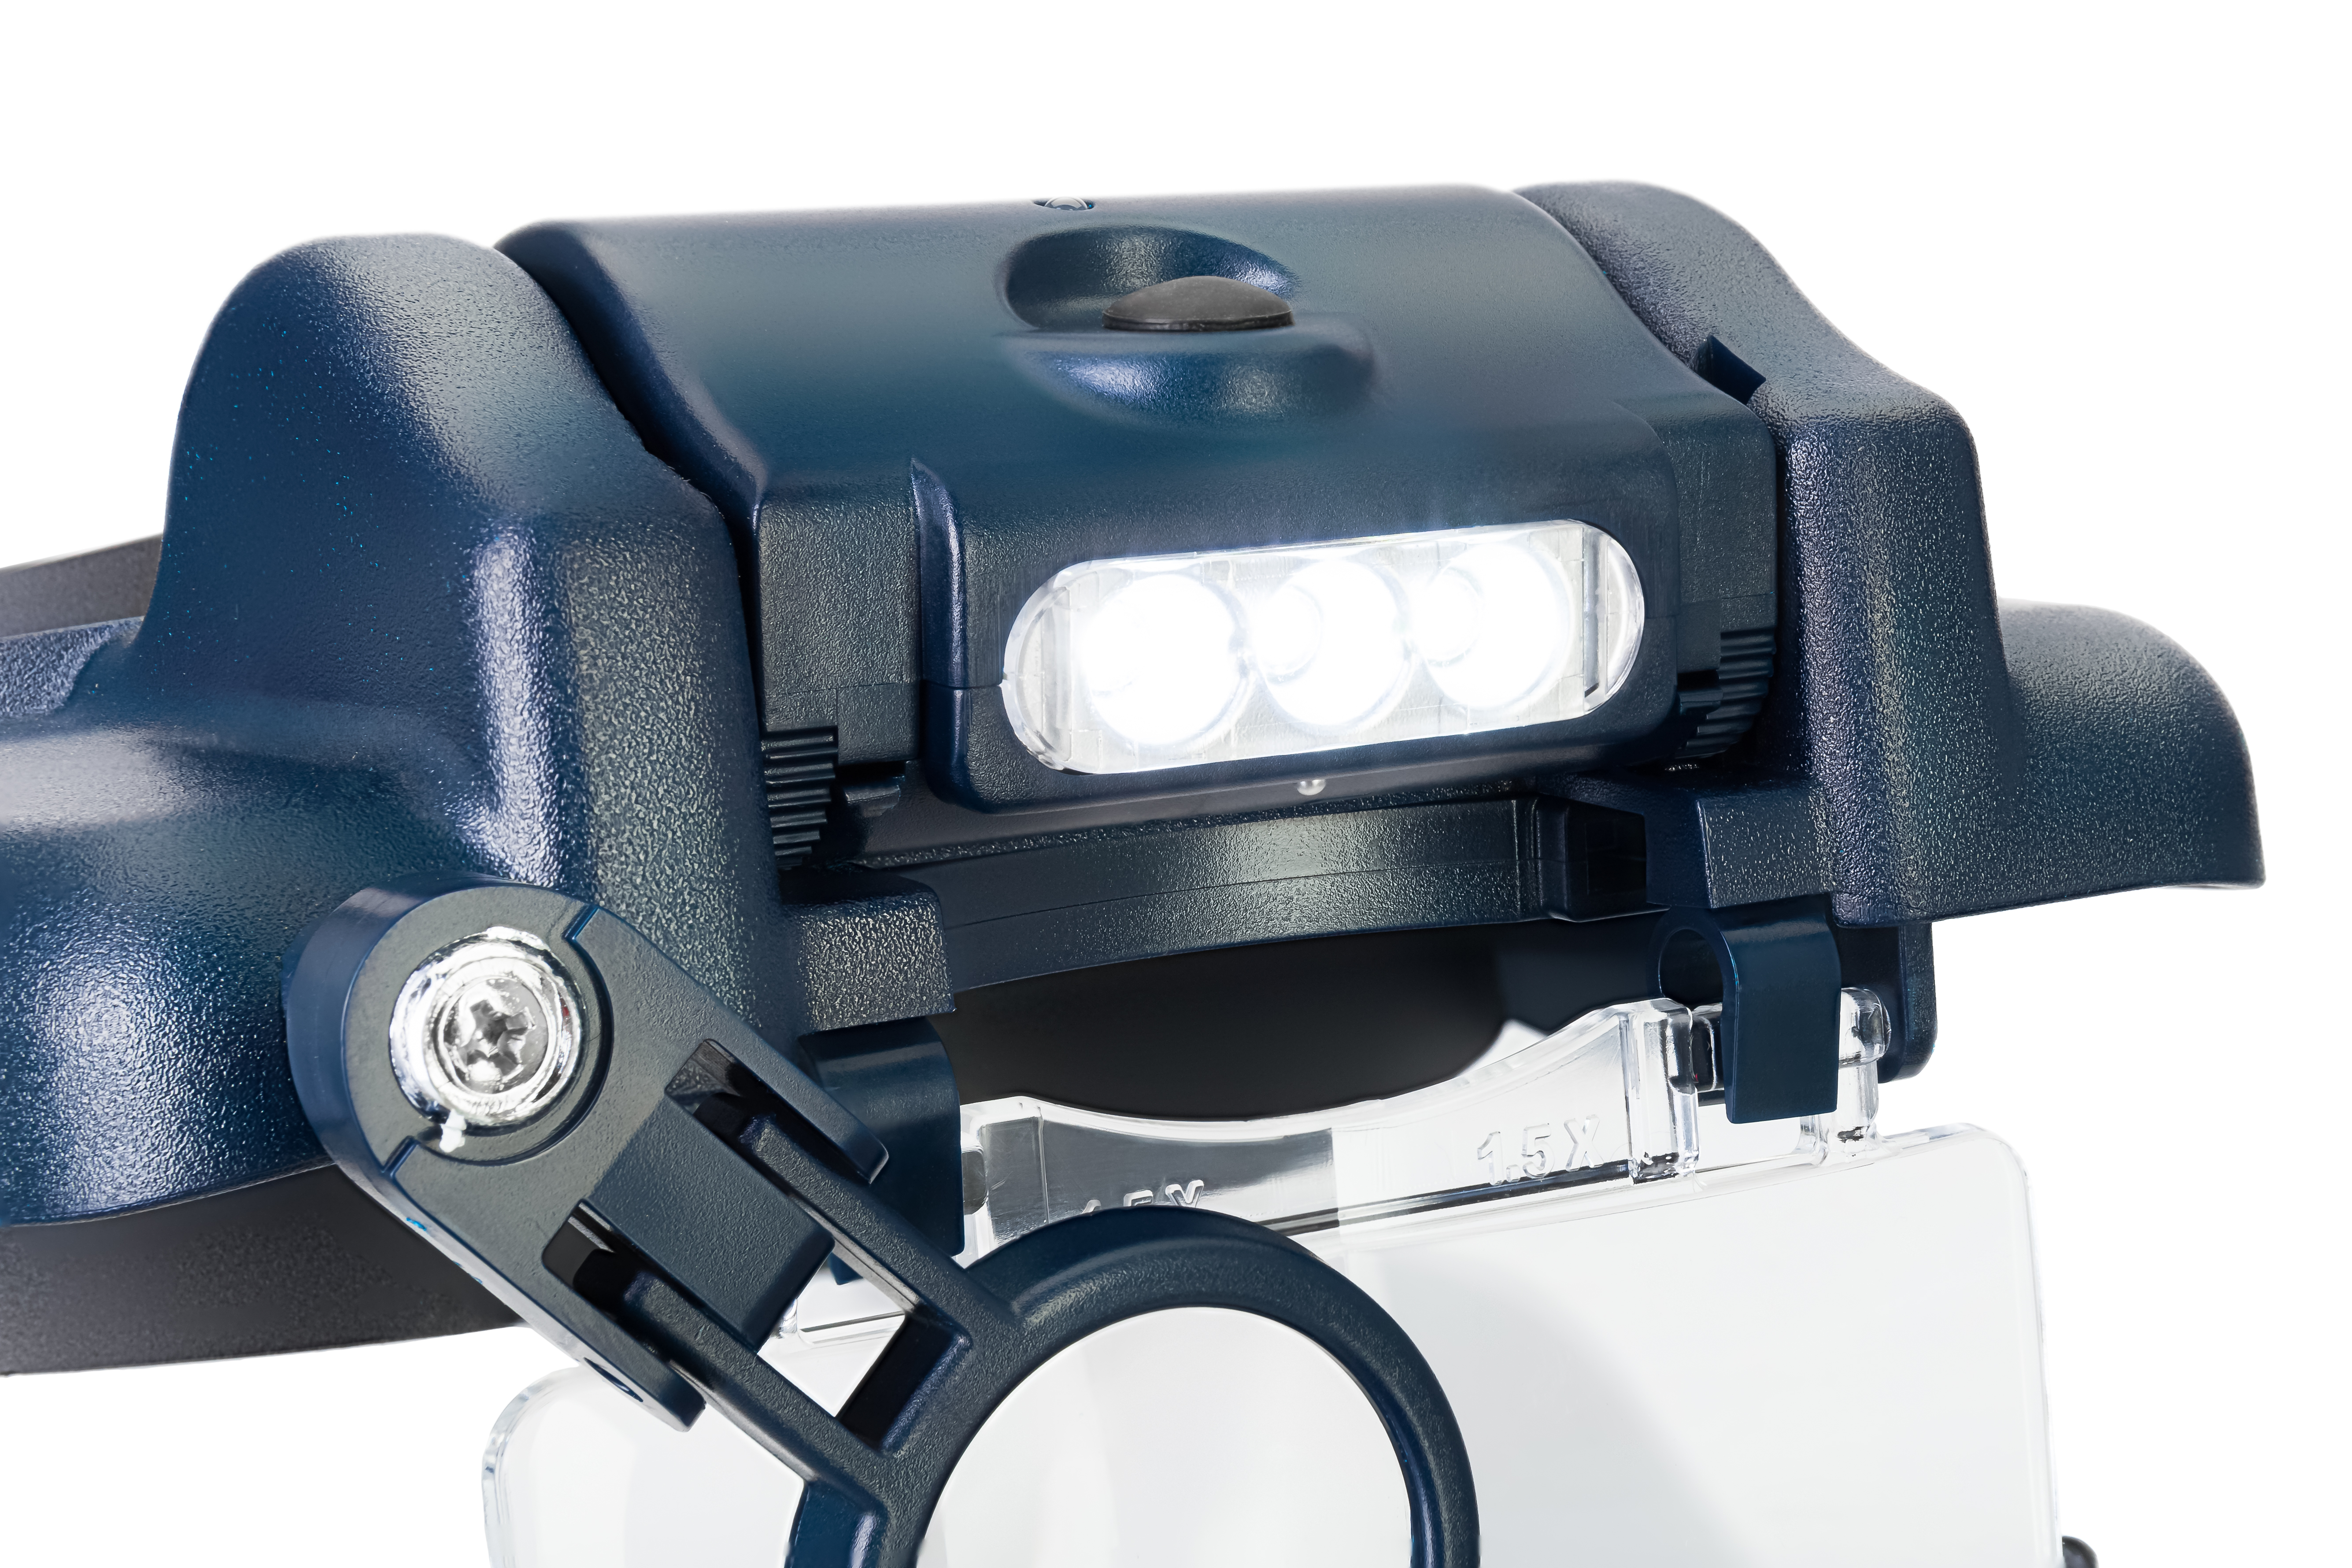 Náhlavná lupa Discovery Crafts DHR 10 s LED osvetlením je ideálna pre všetkých užívateľov, ktorí vyžadujú maximálnu flexibilitu a presnosť práce.